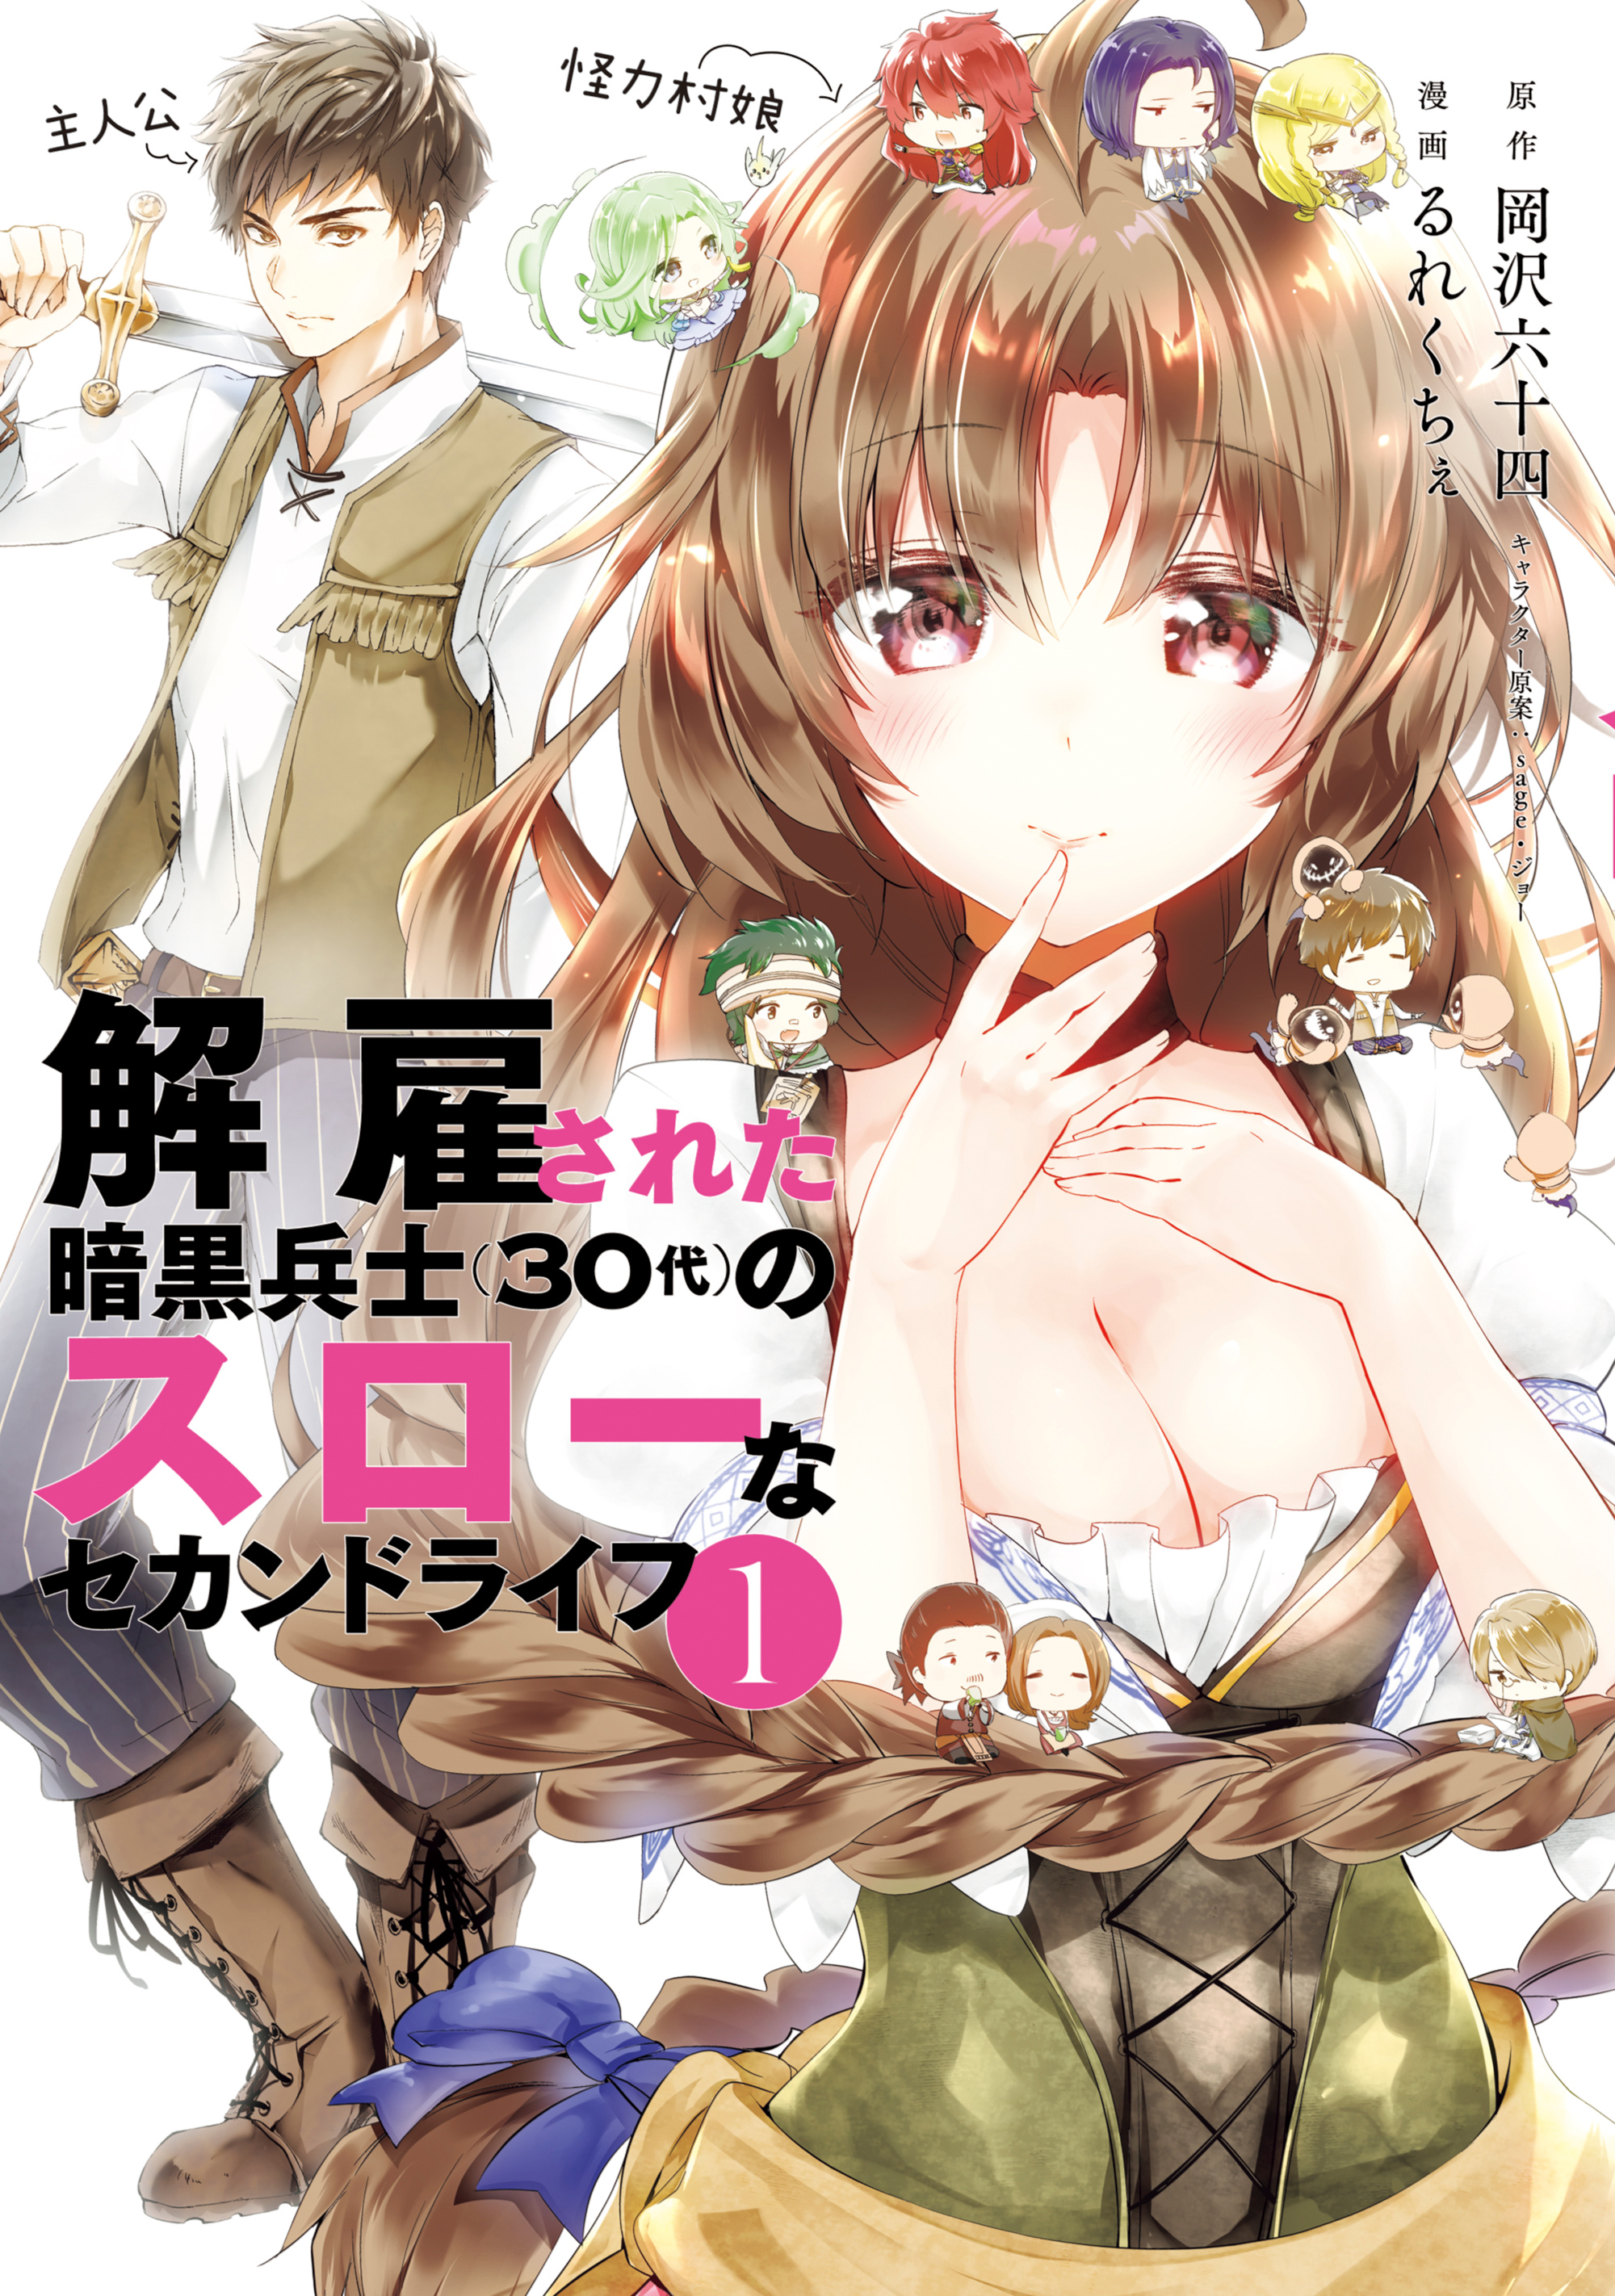 1  Chapter 30 - Kaiko sareta Ankoku Heishi (30-dai) no Slow na Second Life  - MangaDex